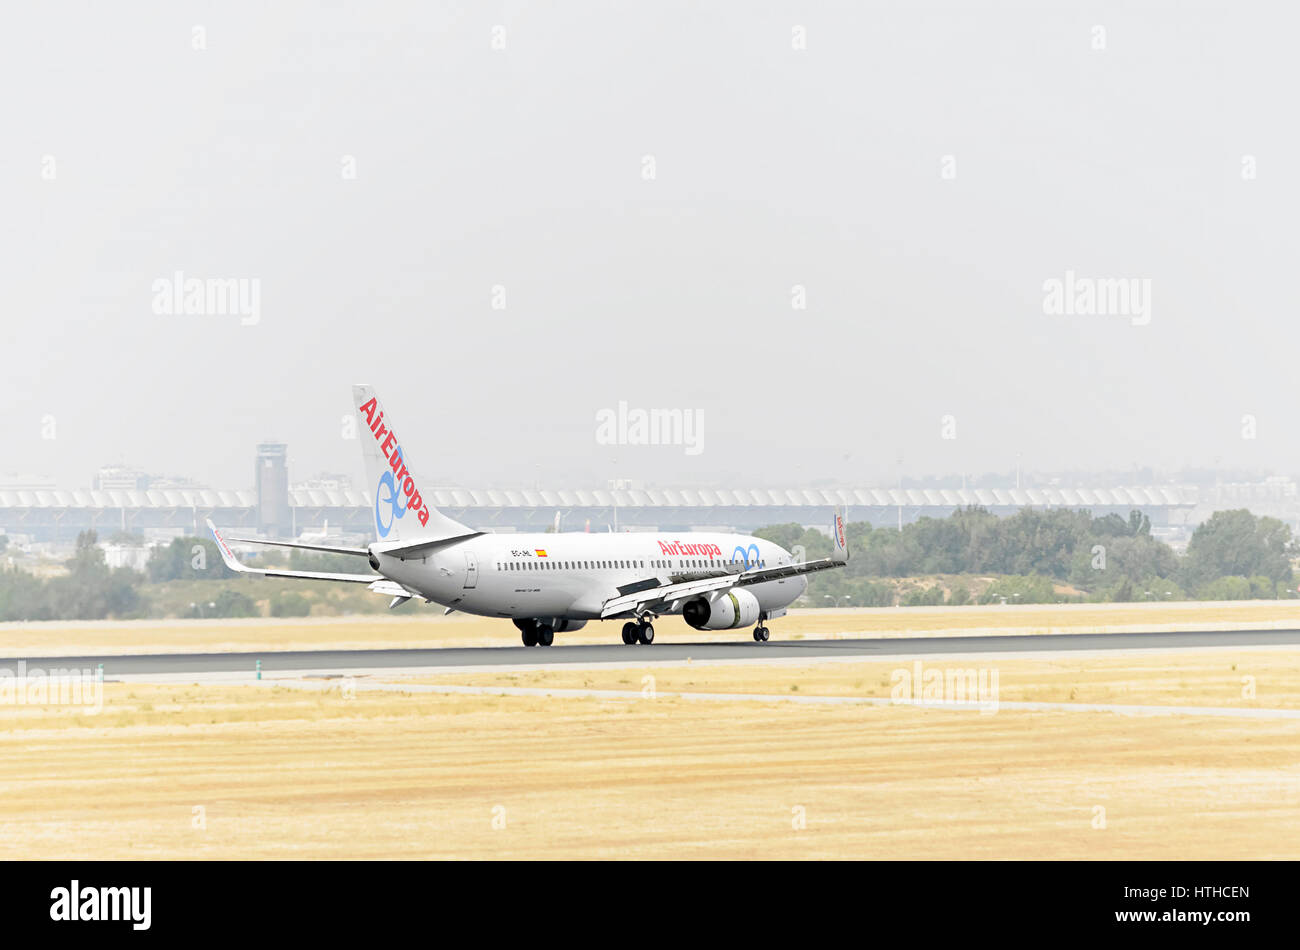 Flugzeug Boeing 737, Air Europa Fluggesellschaft, landet auf Adolfo Suarez Flughafen Madrid - Barajas. Bremsen. Bewölkt und heißen Tag des Sommers. Stockfoto